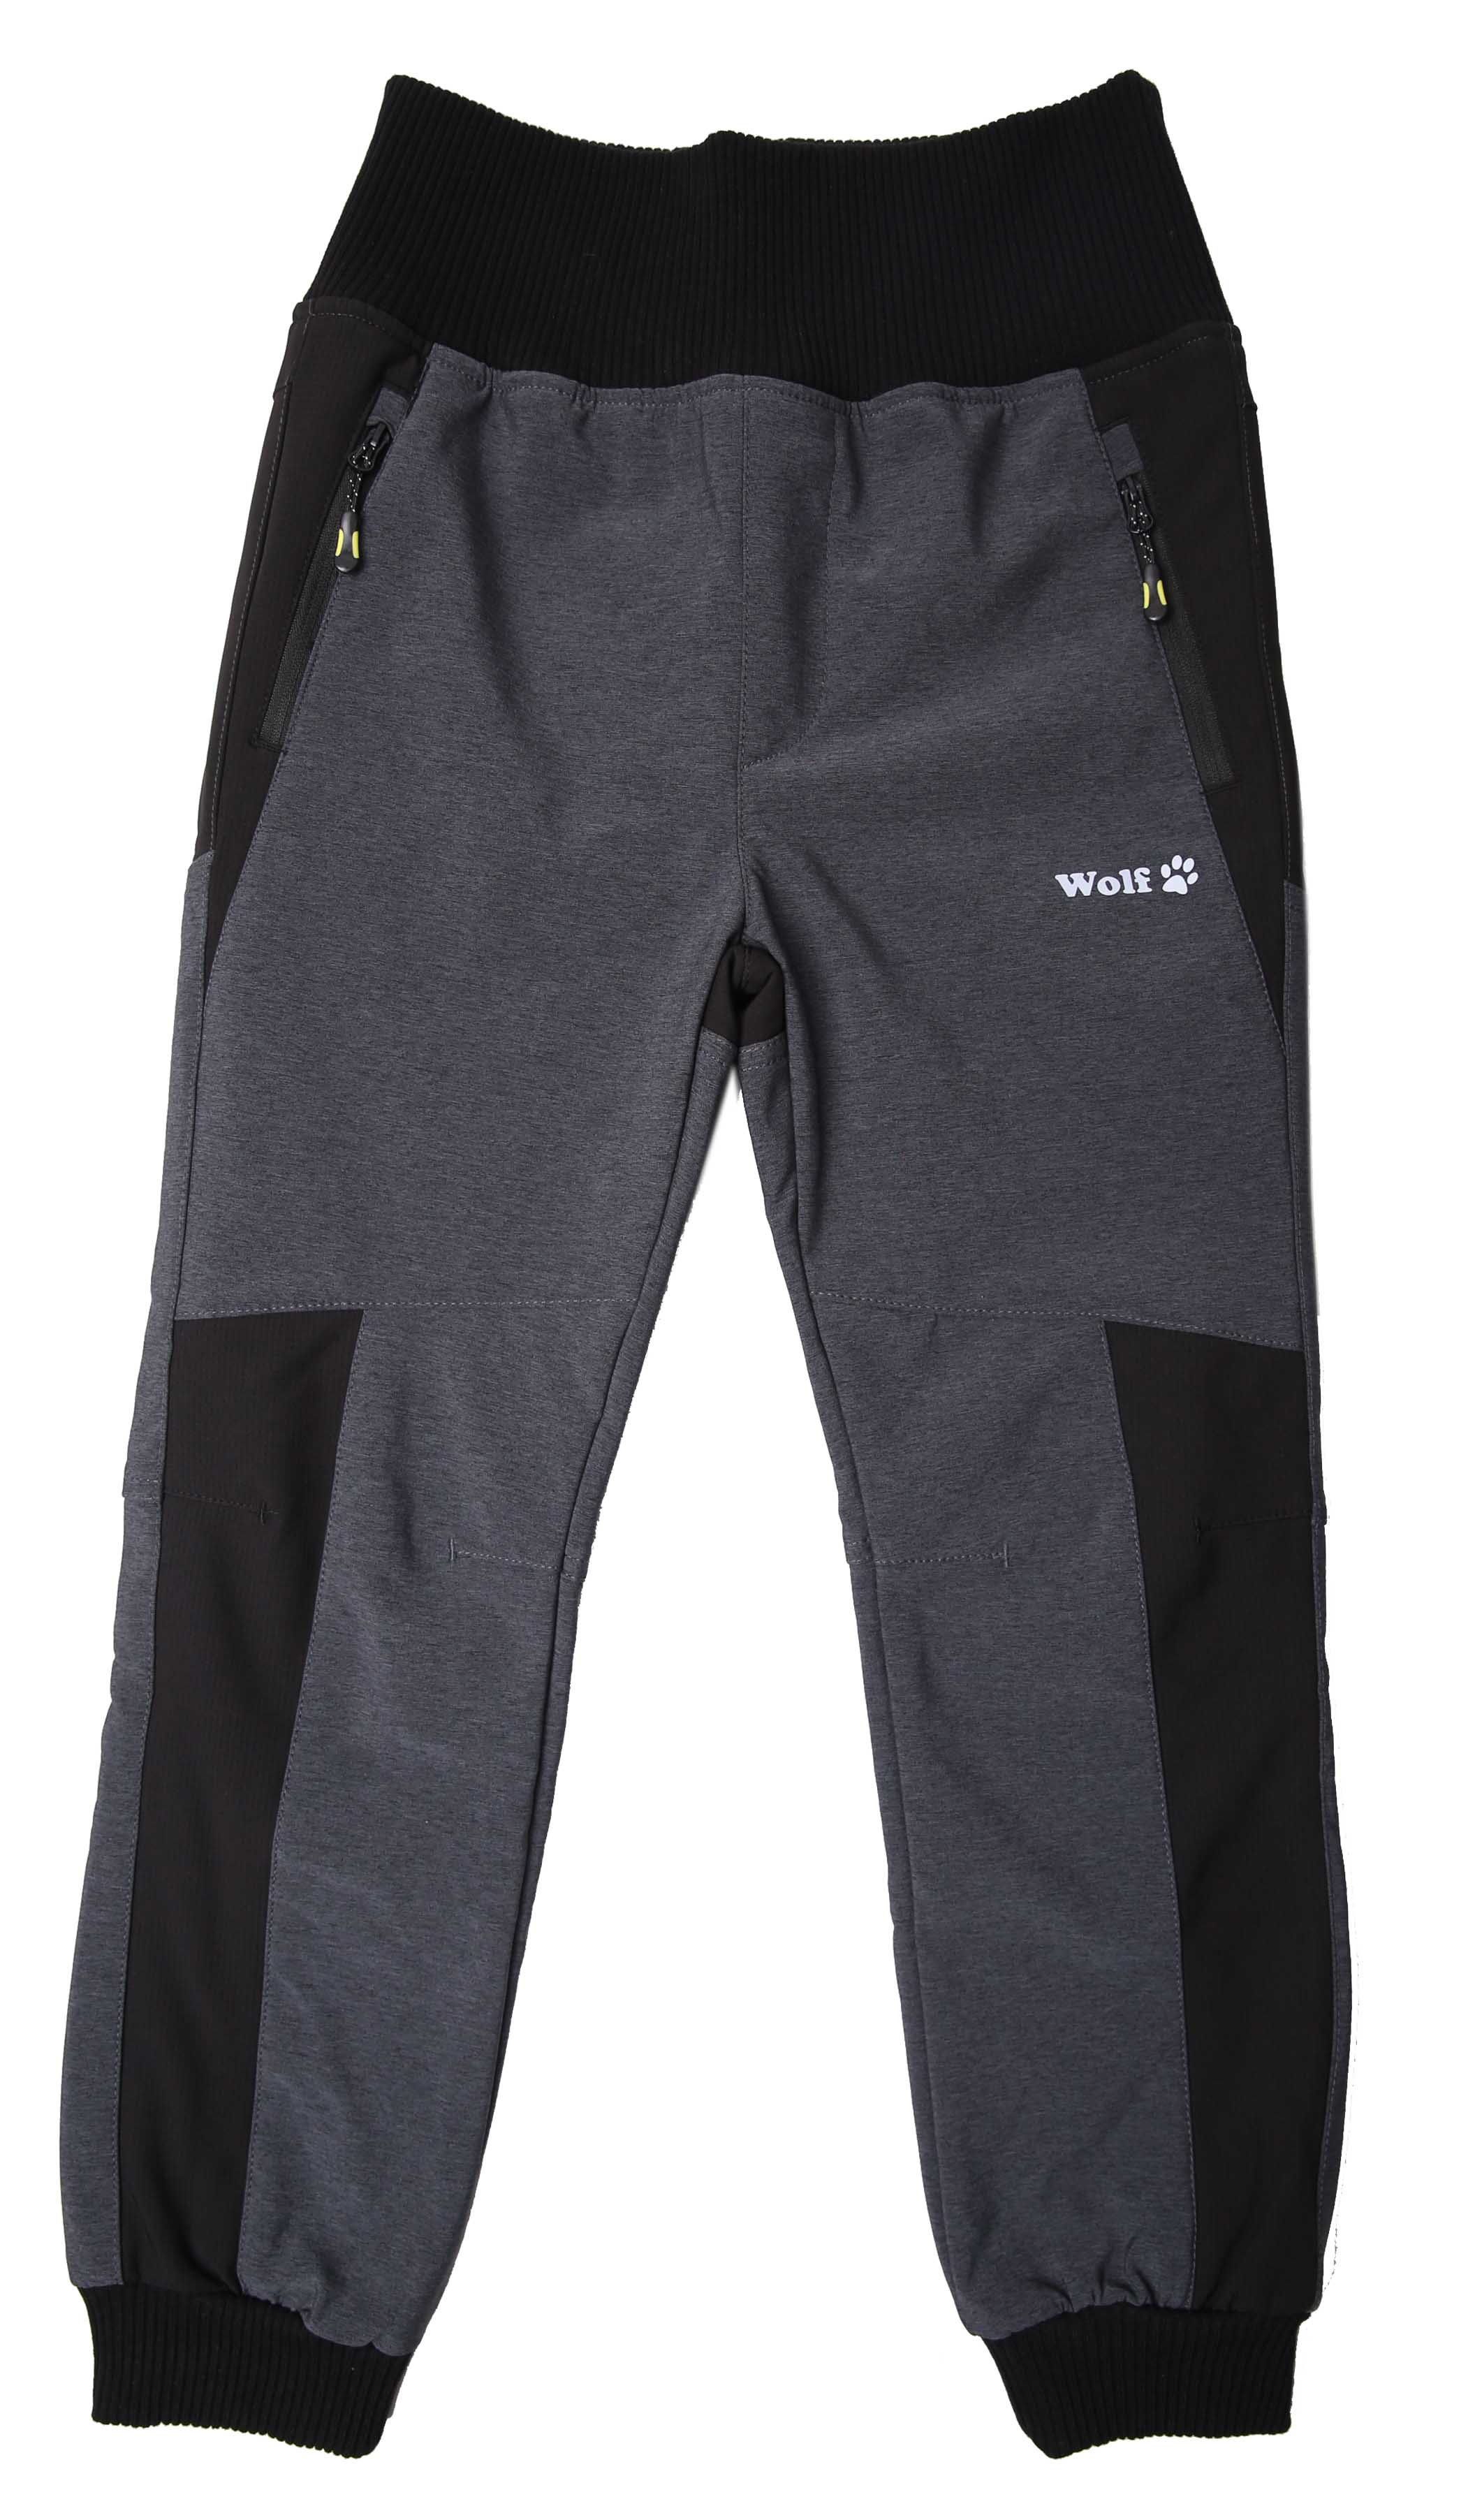 Chlapecké softshellové kalhoty, zateplené - Wolf B2399, šedá Barva: Šedá, Velikost: 98